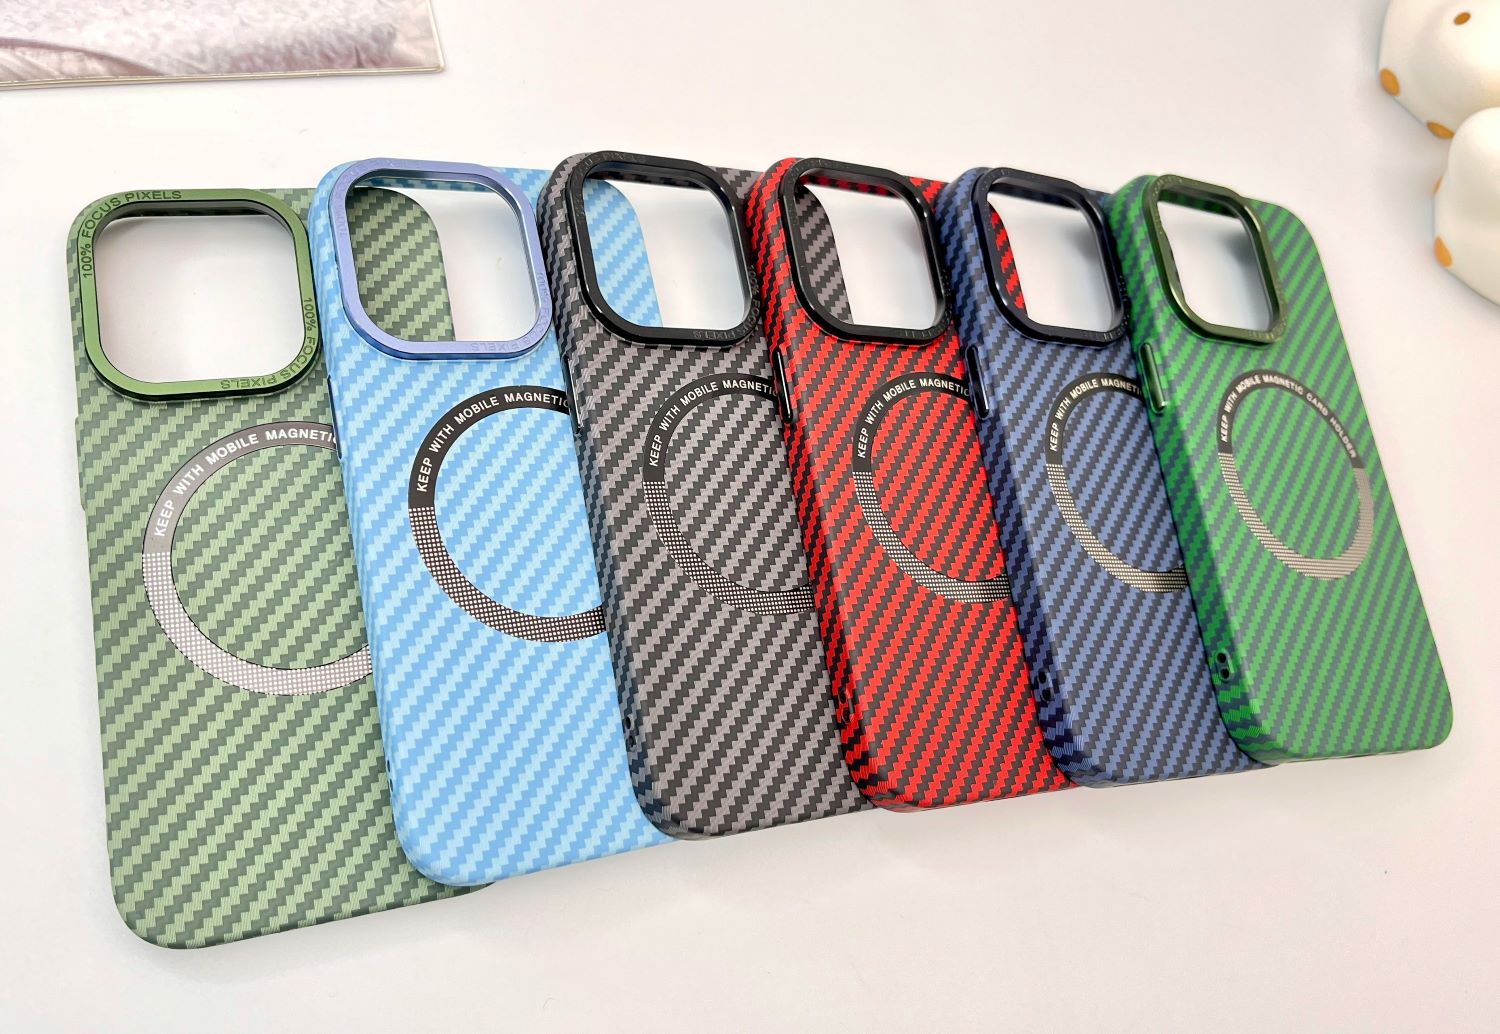 Zu sehen sind sechs Handyhüllen in verschiedenen Farben.